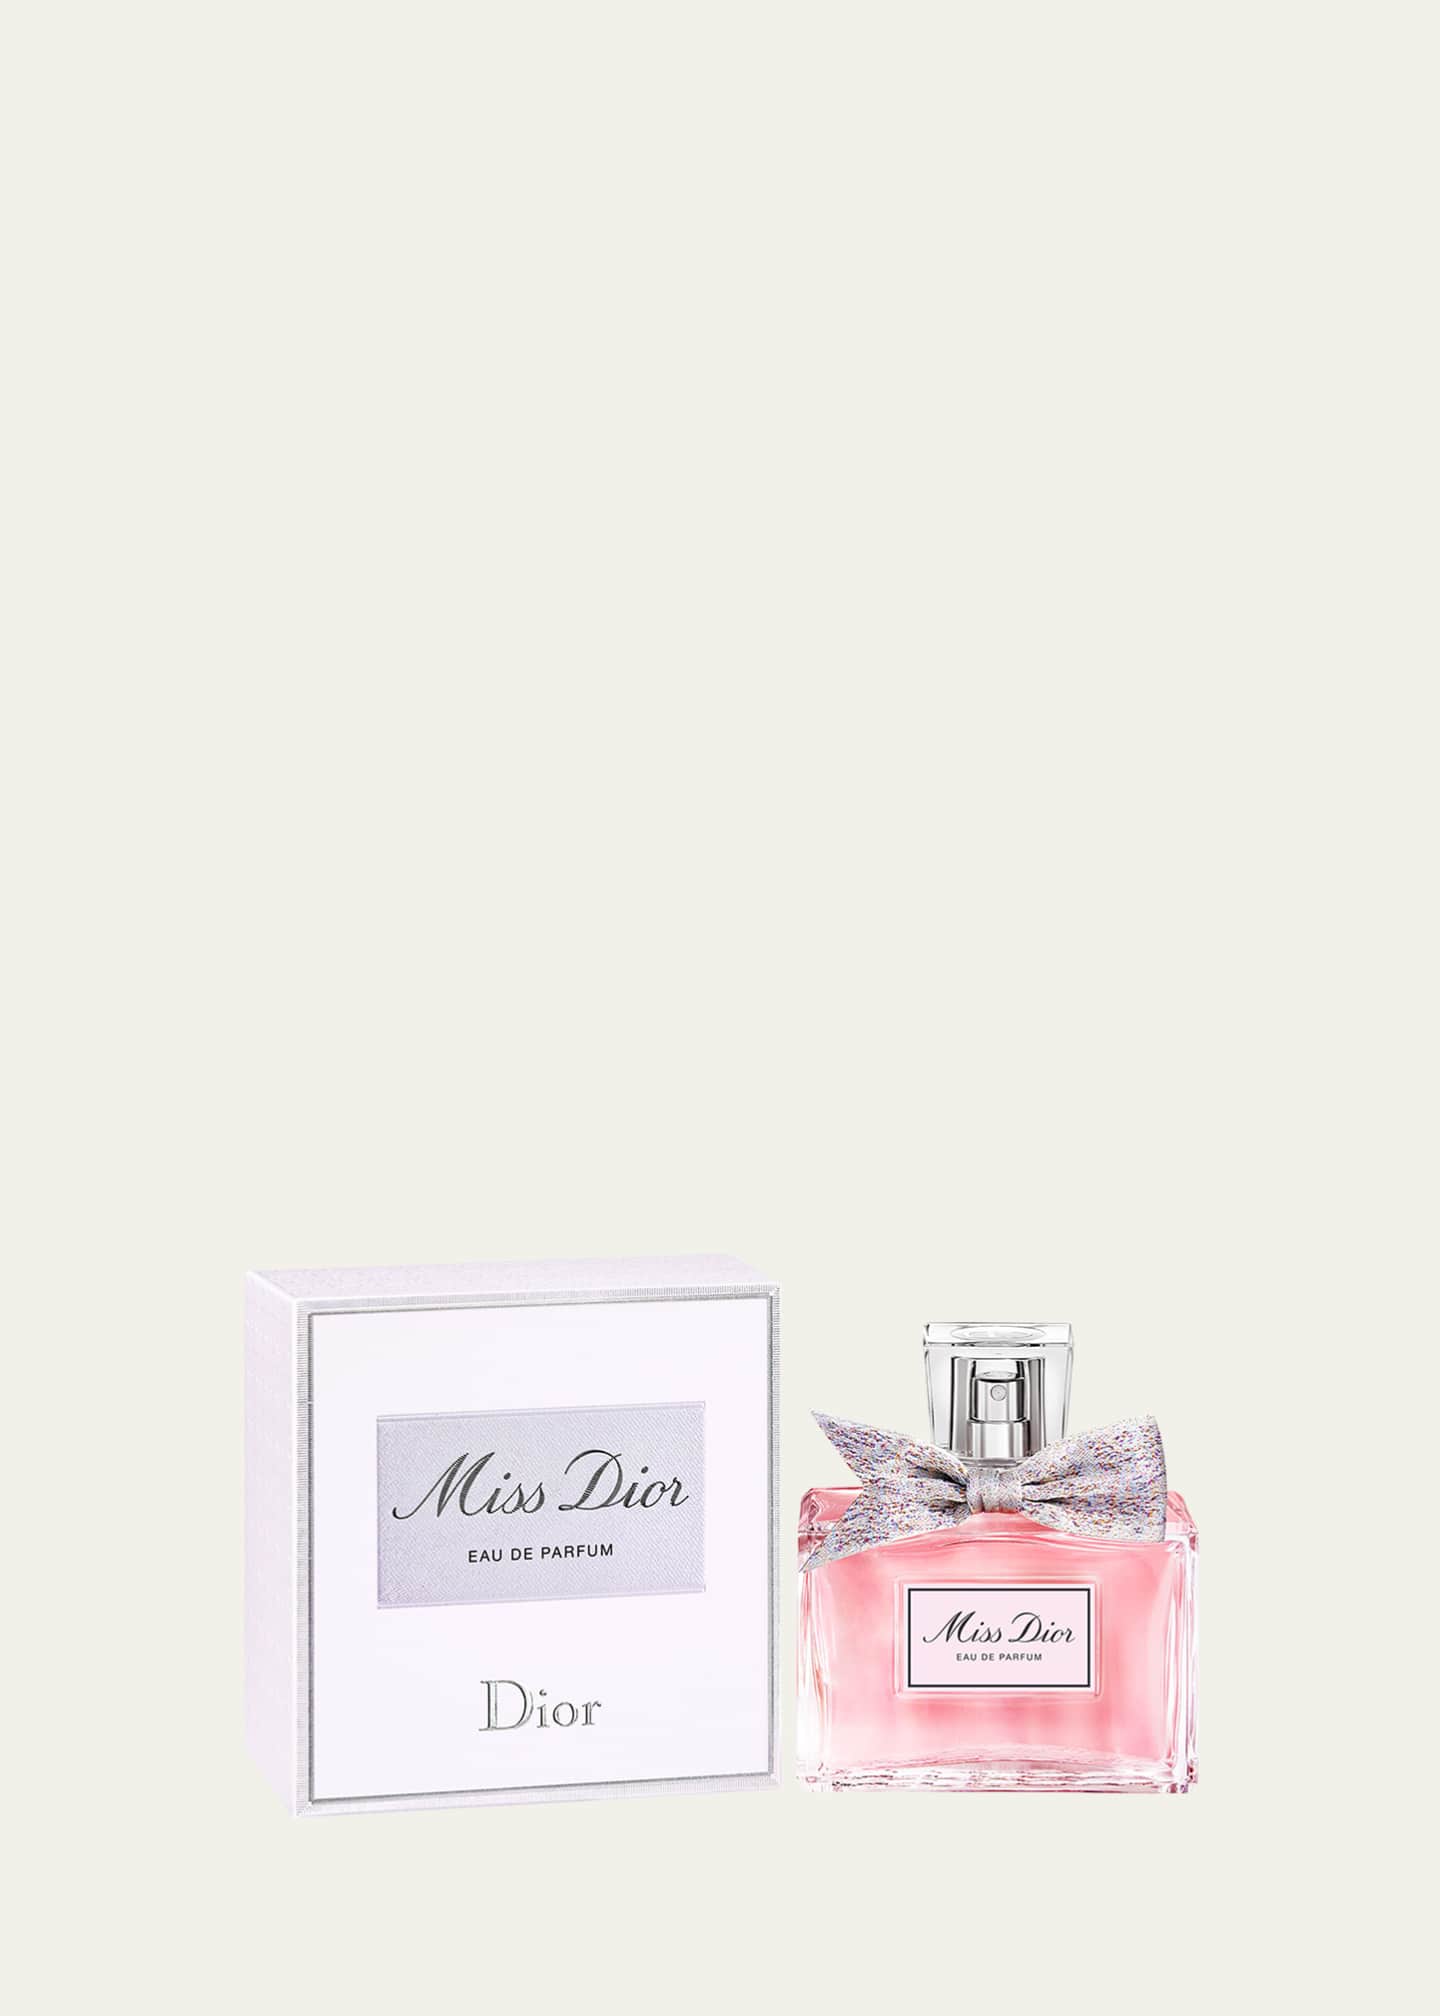 Dior Miss Dior Eau de Parfum, 3.4 oz. - Bergdorf Goodman